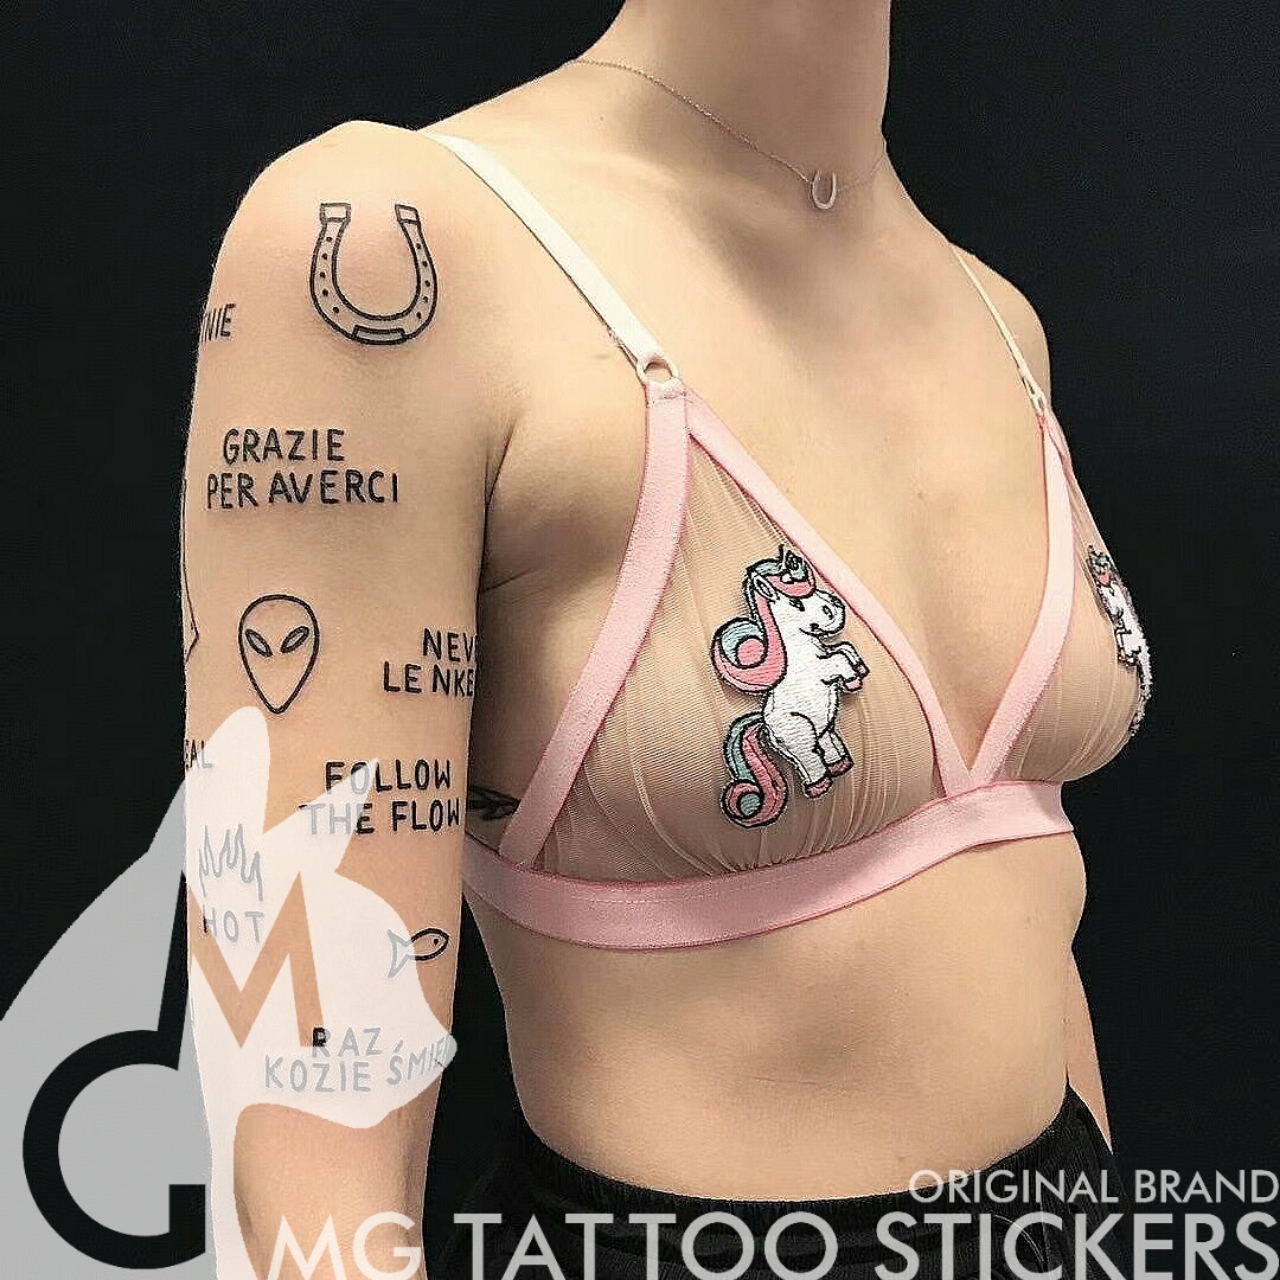 MG纹身贴/手绘TATTOO/多国语言/个性原宿文字图案拼接花臂/纹身贴